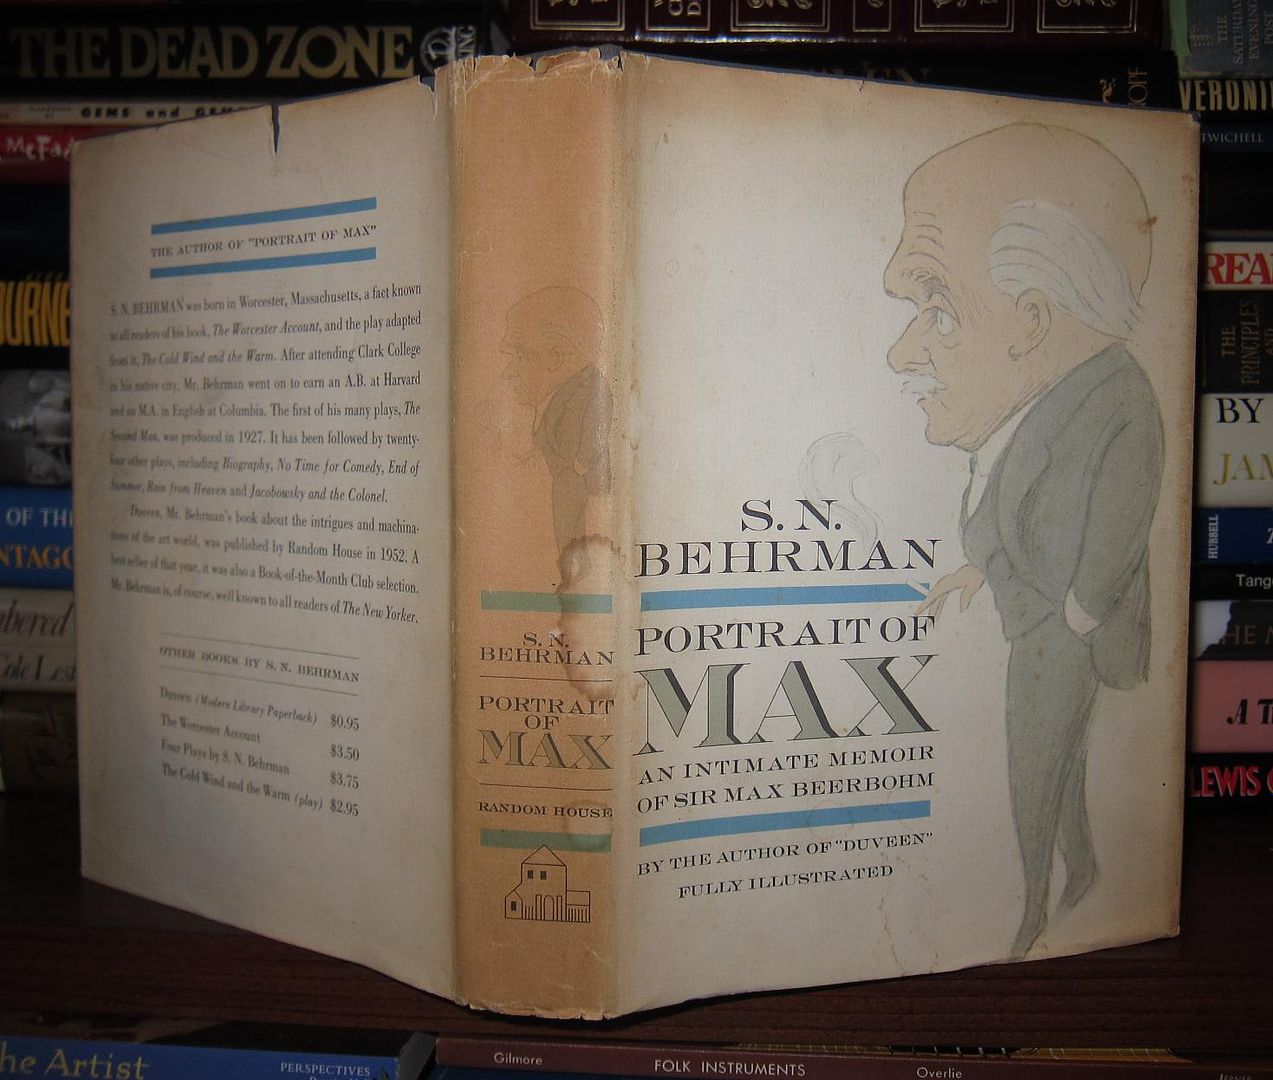 BEHRMAN, S. N. - SIR MAX BEERBOHM - Portrait of Max an Intimate Memoir of Sir Max Beerbohm